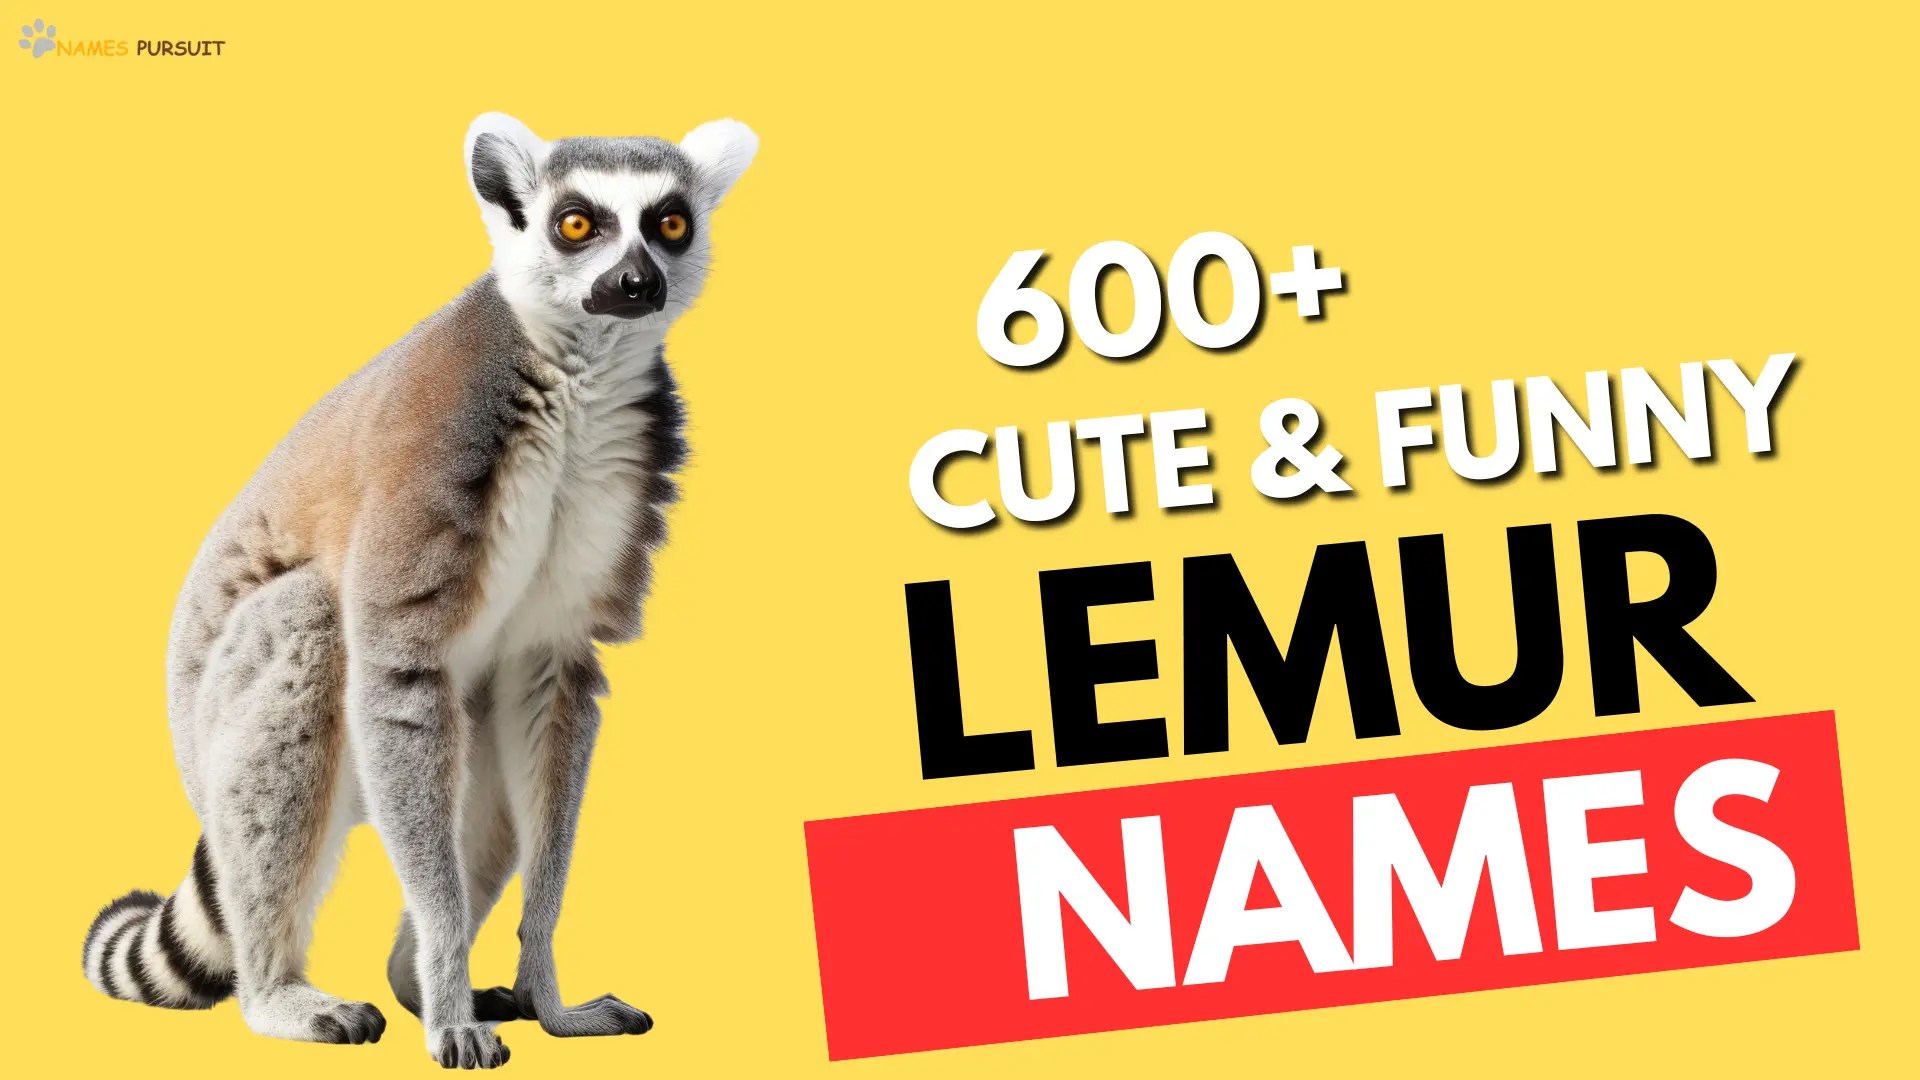 Cute & Funny Lemur Names